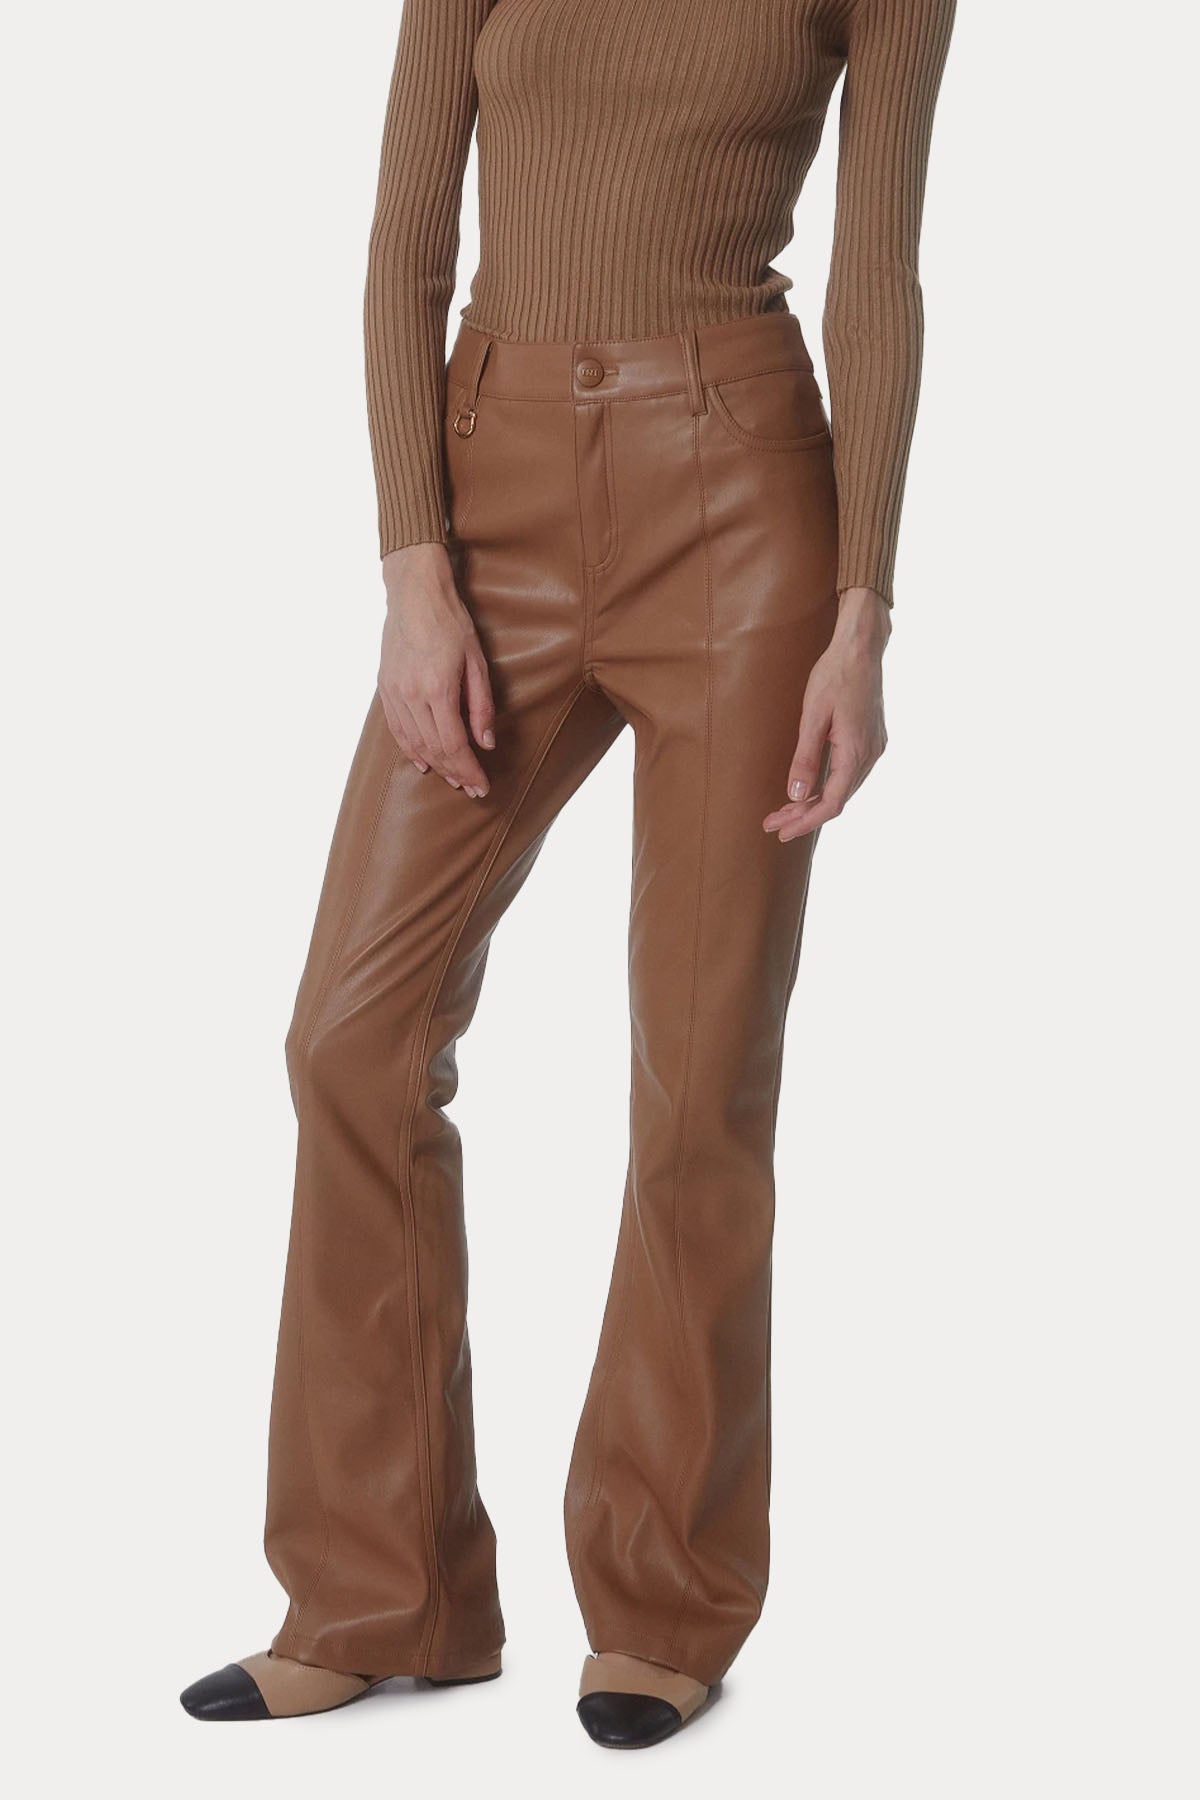 Bsb Yüksek Bel Deri Pantolon-Libas Trendy Fashion Store